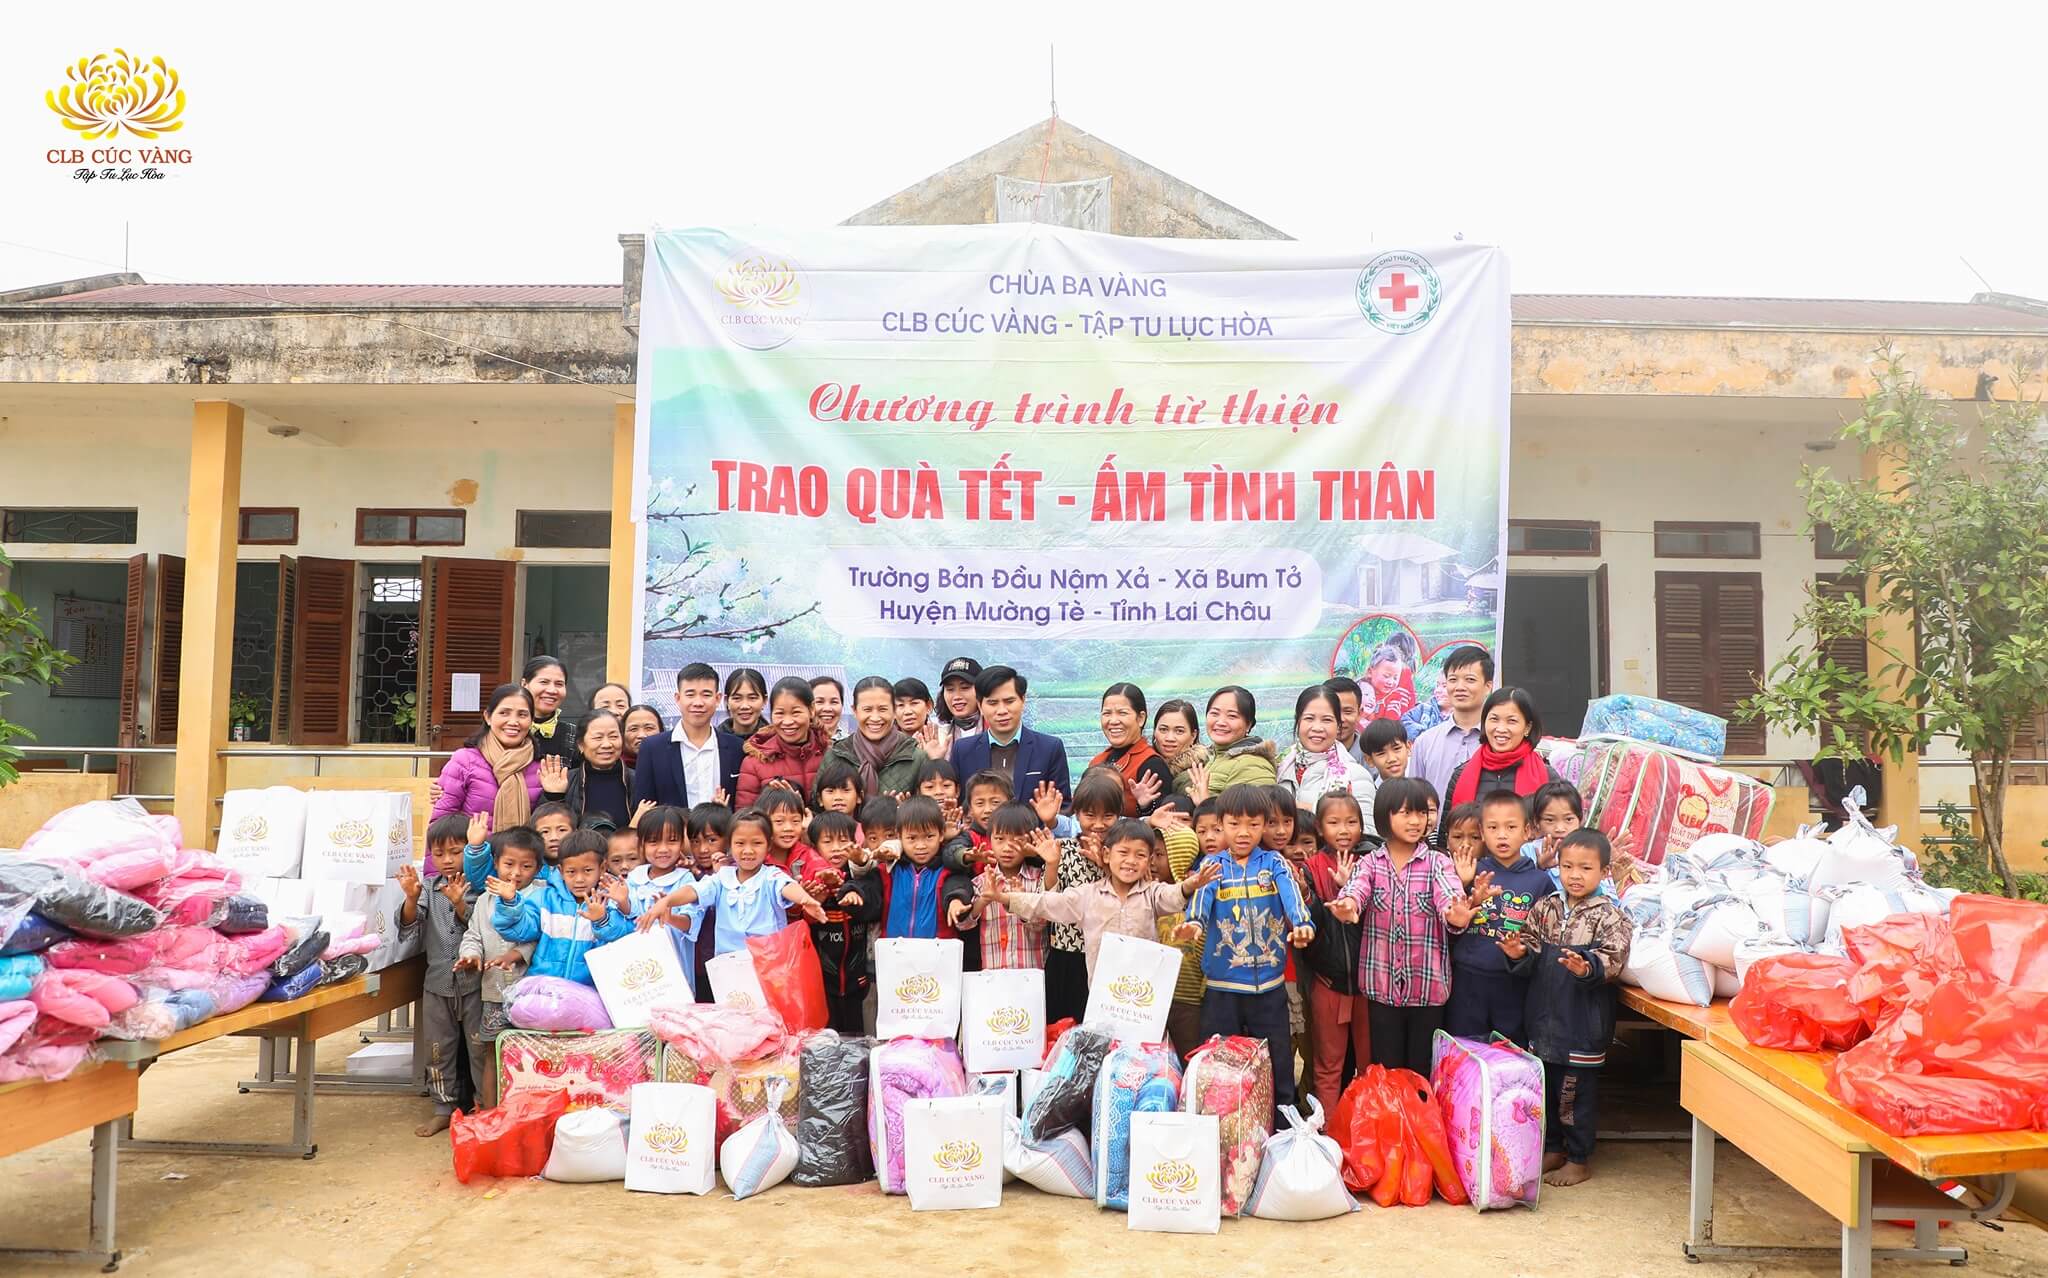 Chương trình từ thiện: Tết ấm tình thân về trên Tây Bắc của CLB Cúc Vàng - Tập Tu Lục Hòa